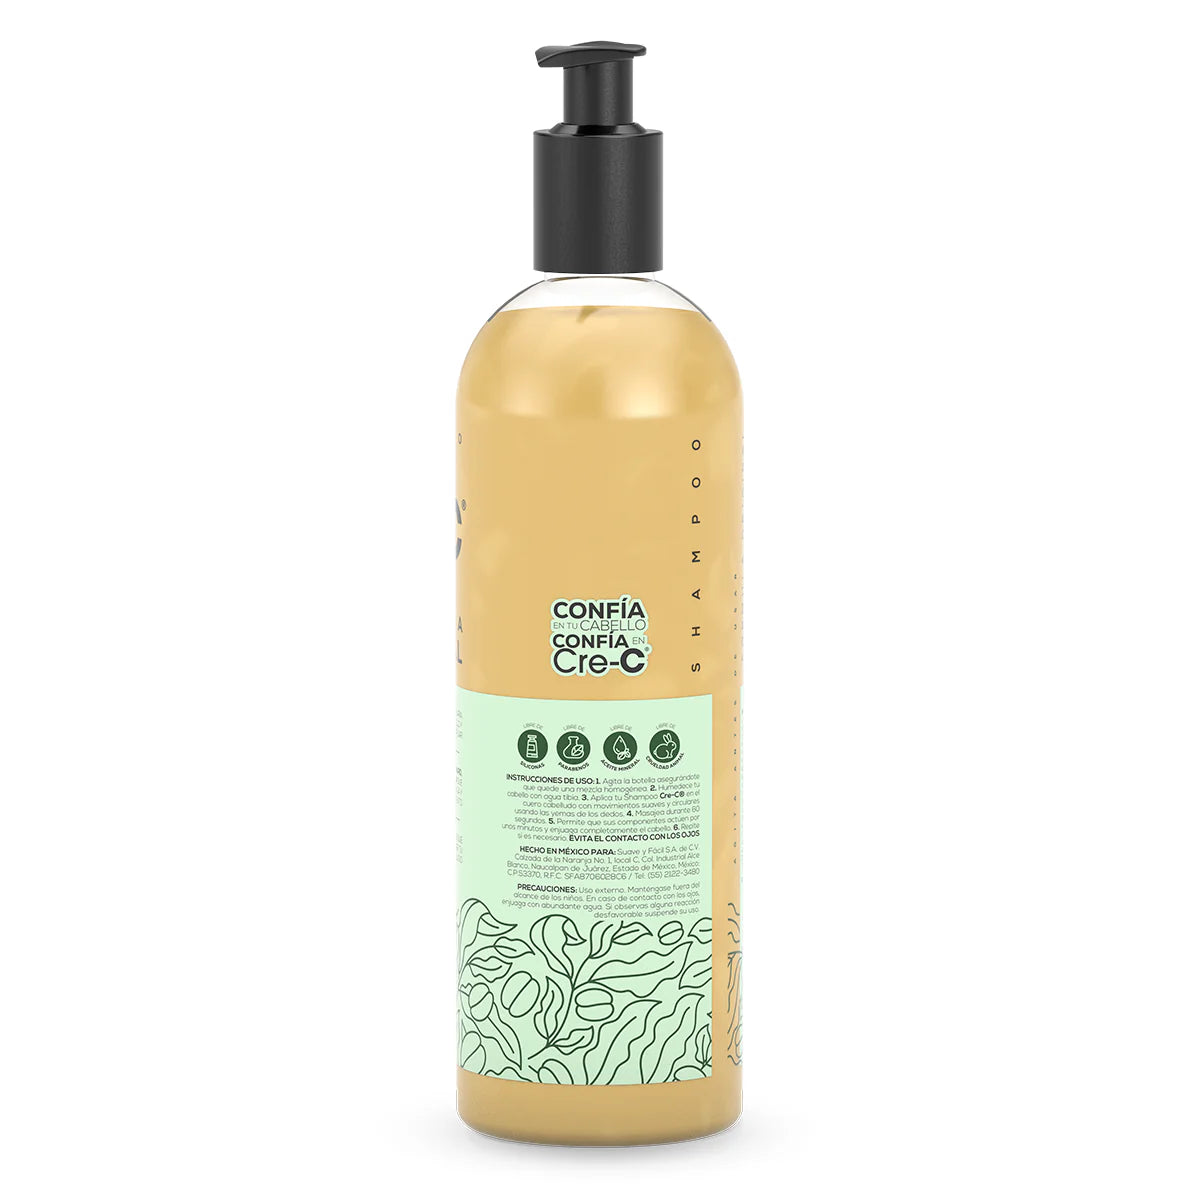 Shampoo Cre-C® Fórmula Original 500ml